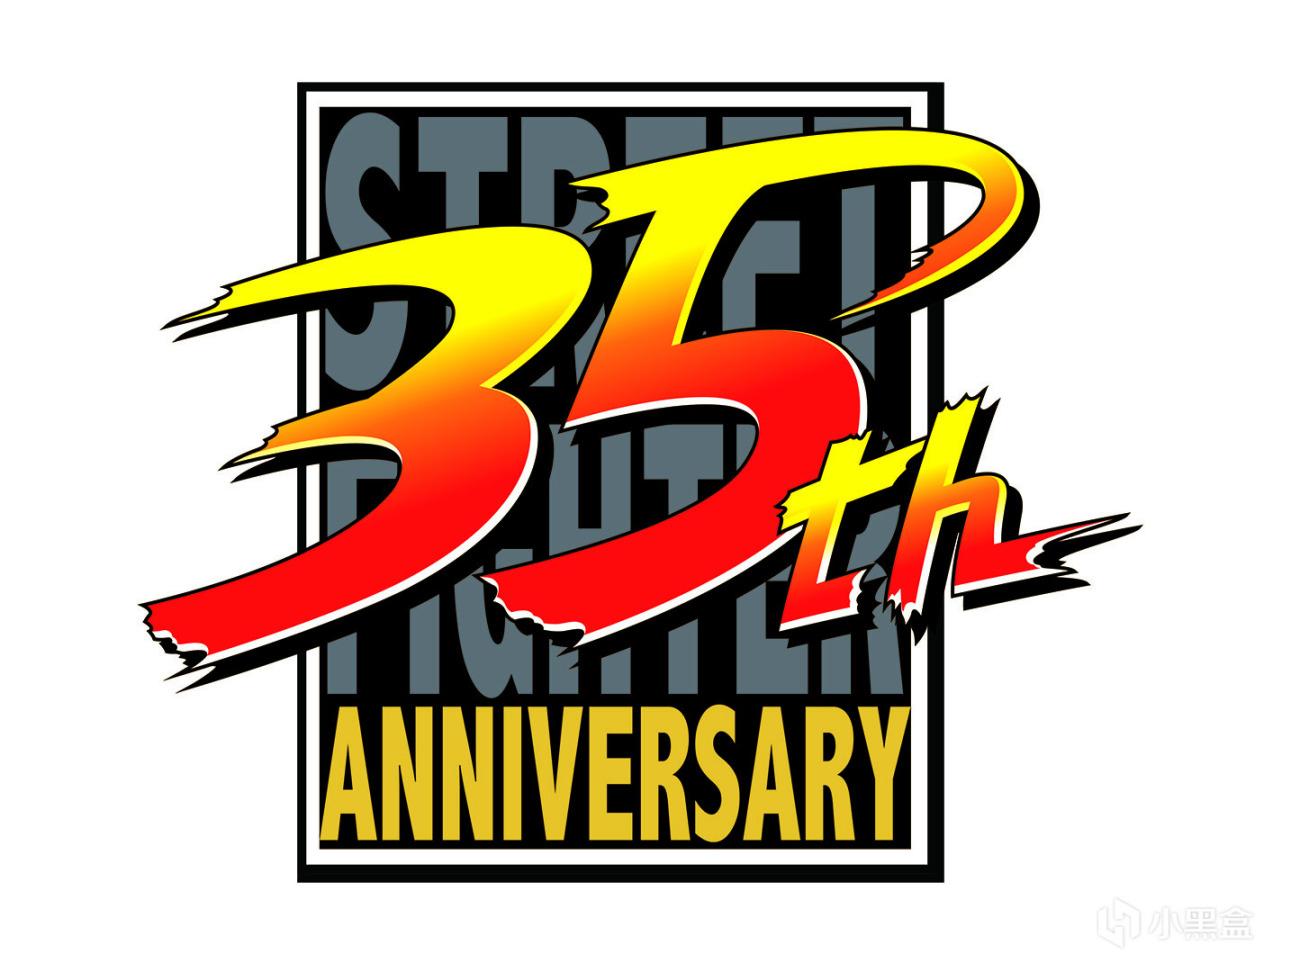 《街霸》公佈系列35週年LOGO丨格鬥遊戲資訊一週回顧